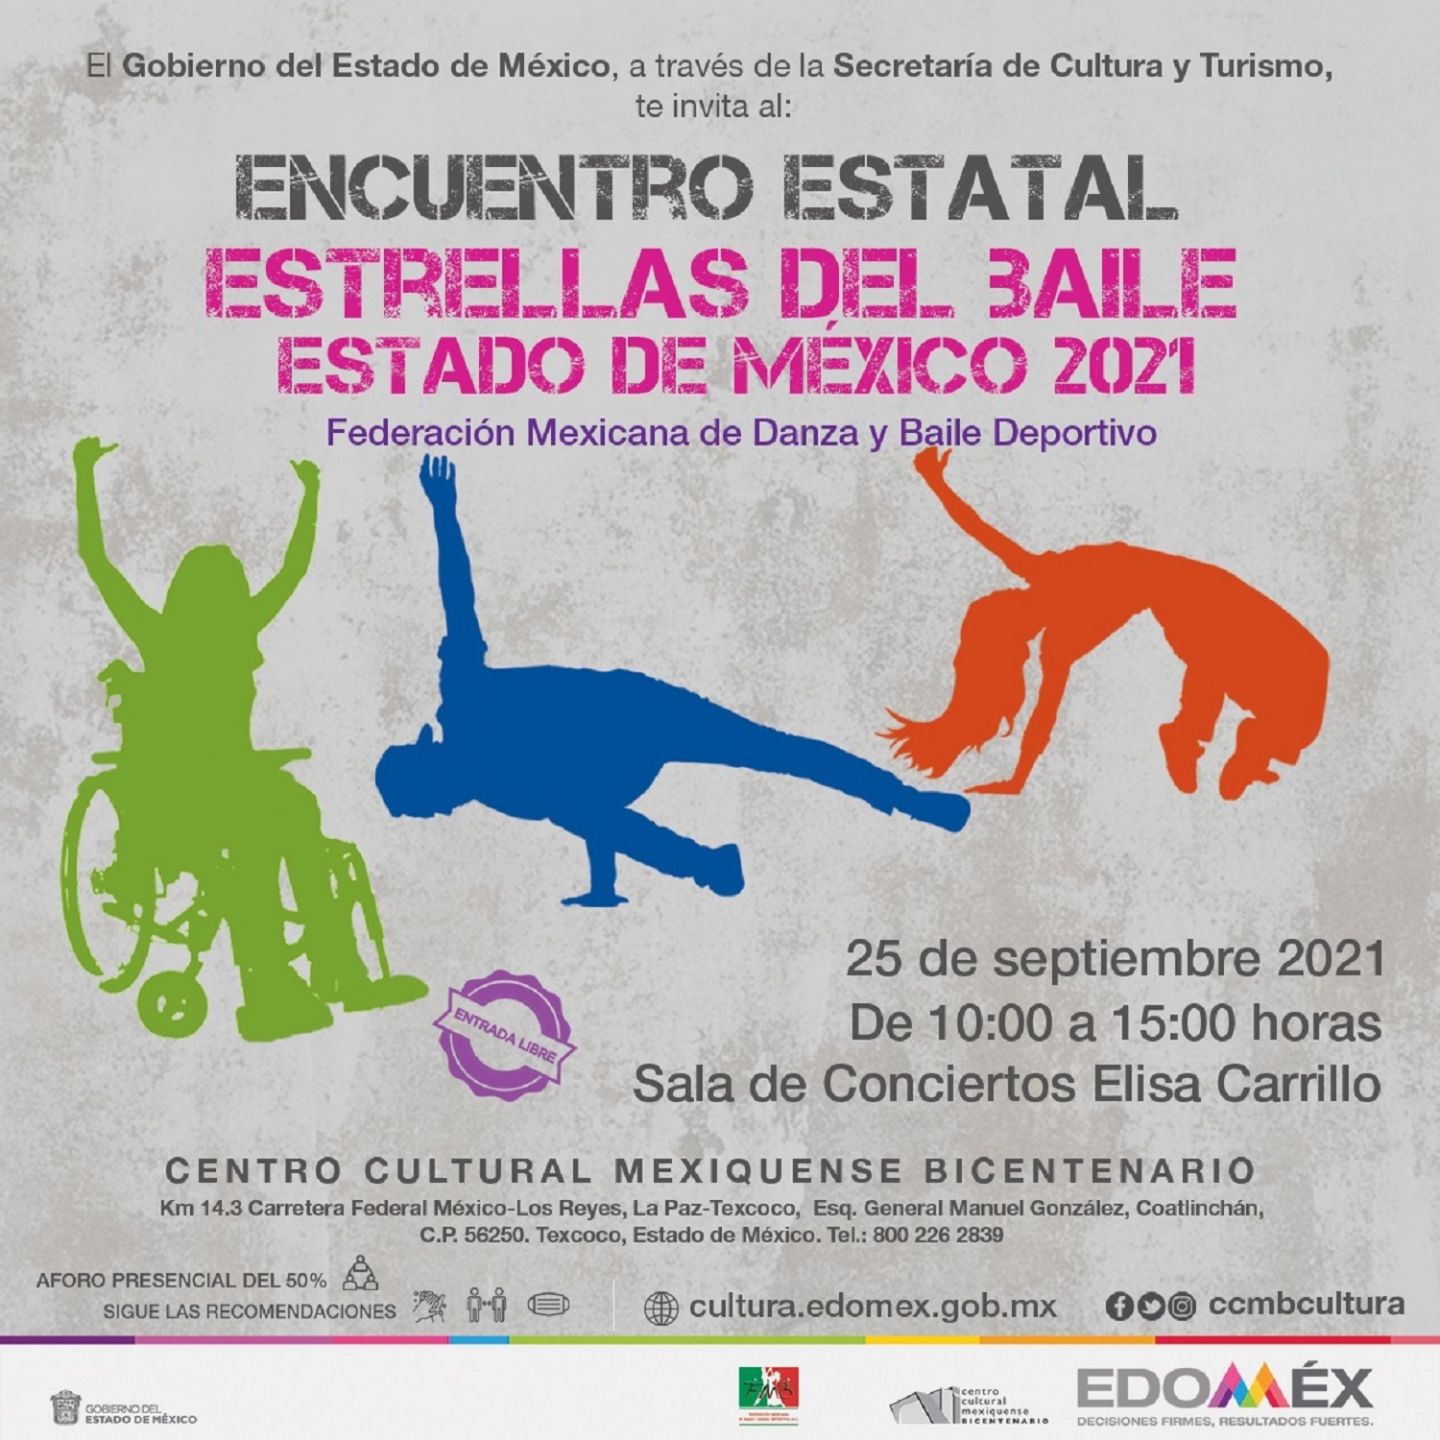 Presenta Centro Cultura Mexiquense Bicentenario Encuentro estatal ’estrellas del baile Estado de México 2021’ 